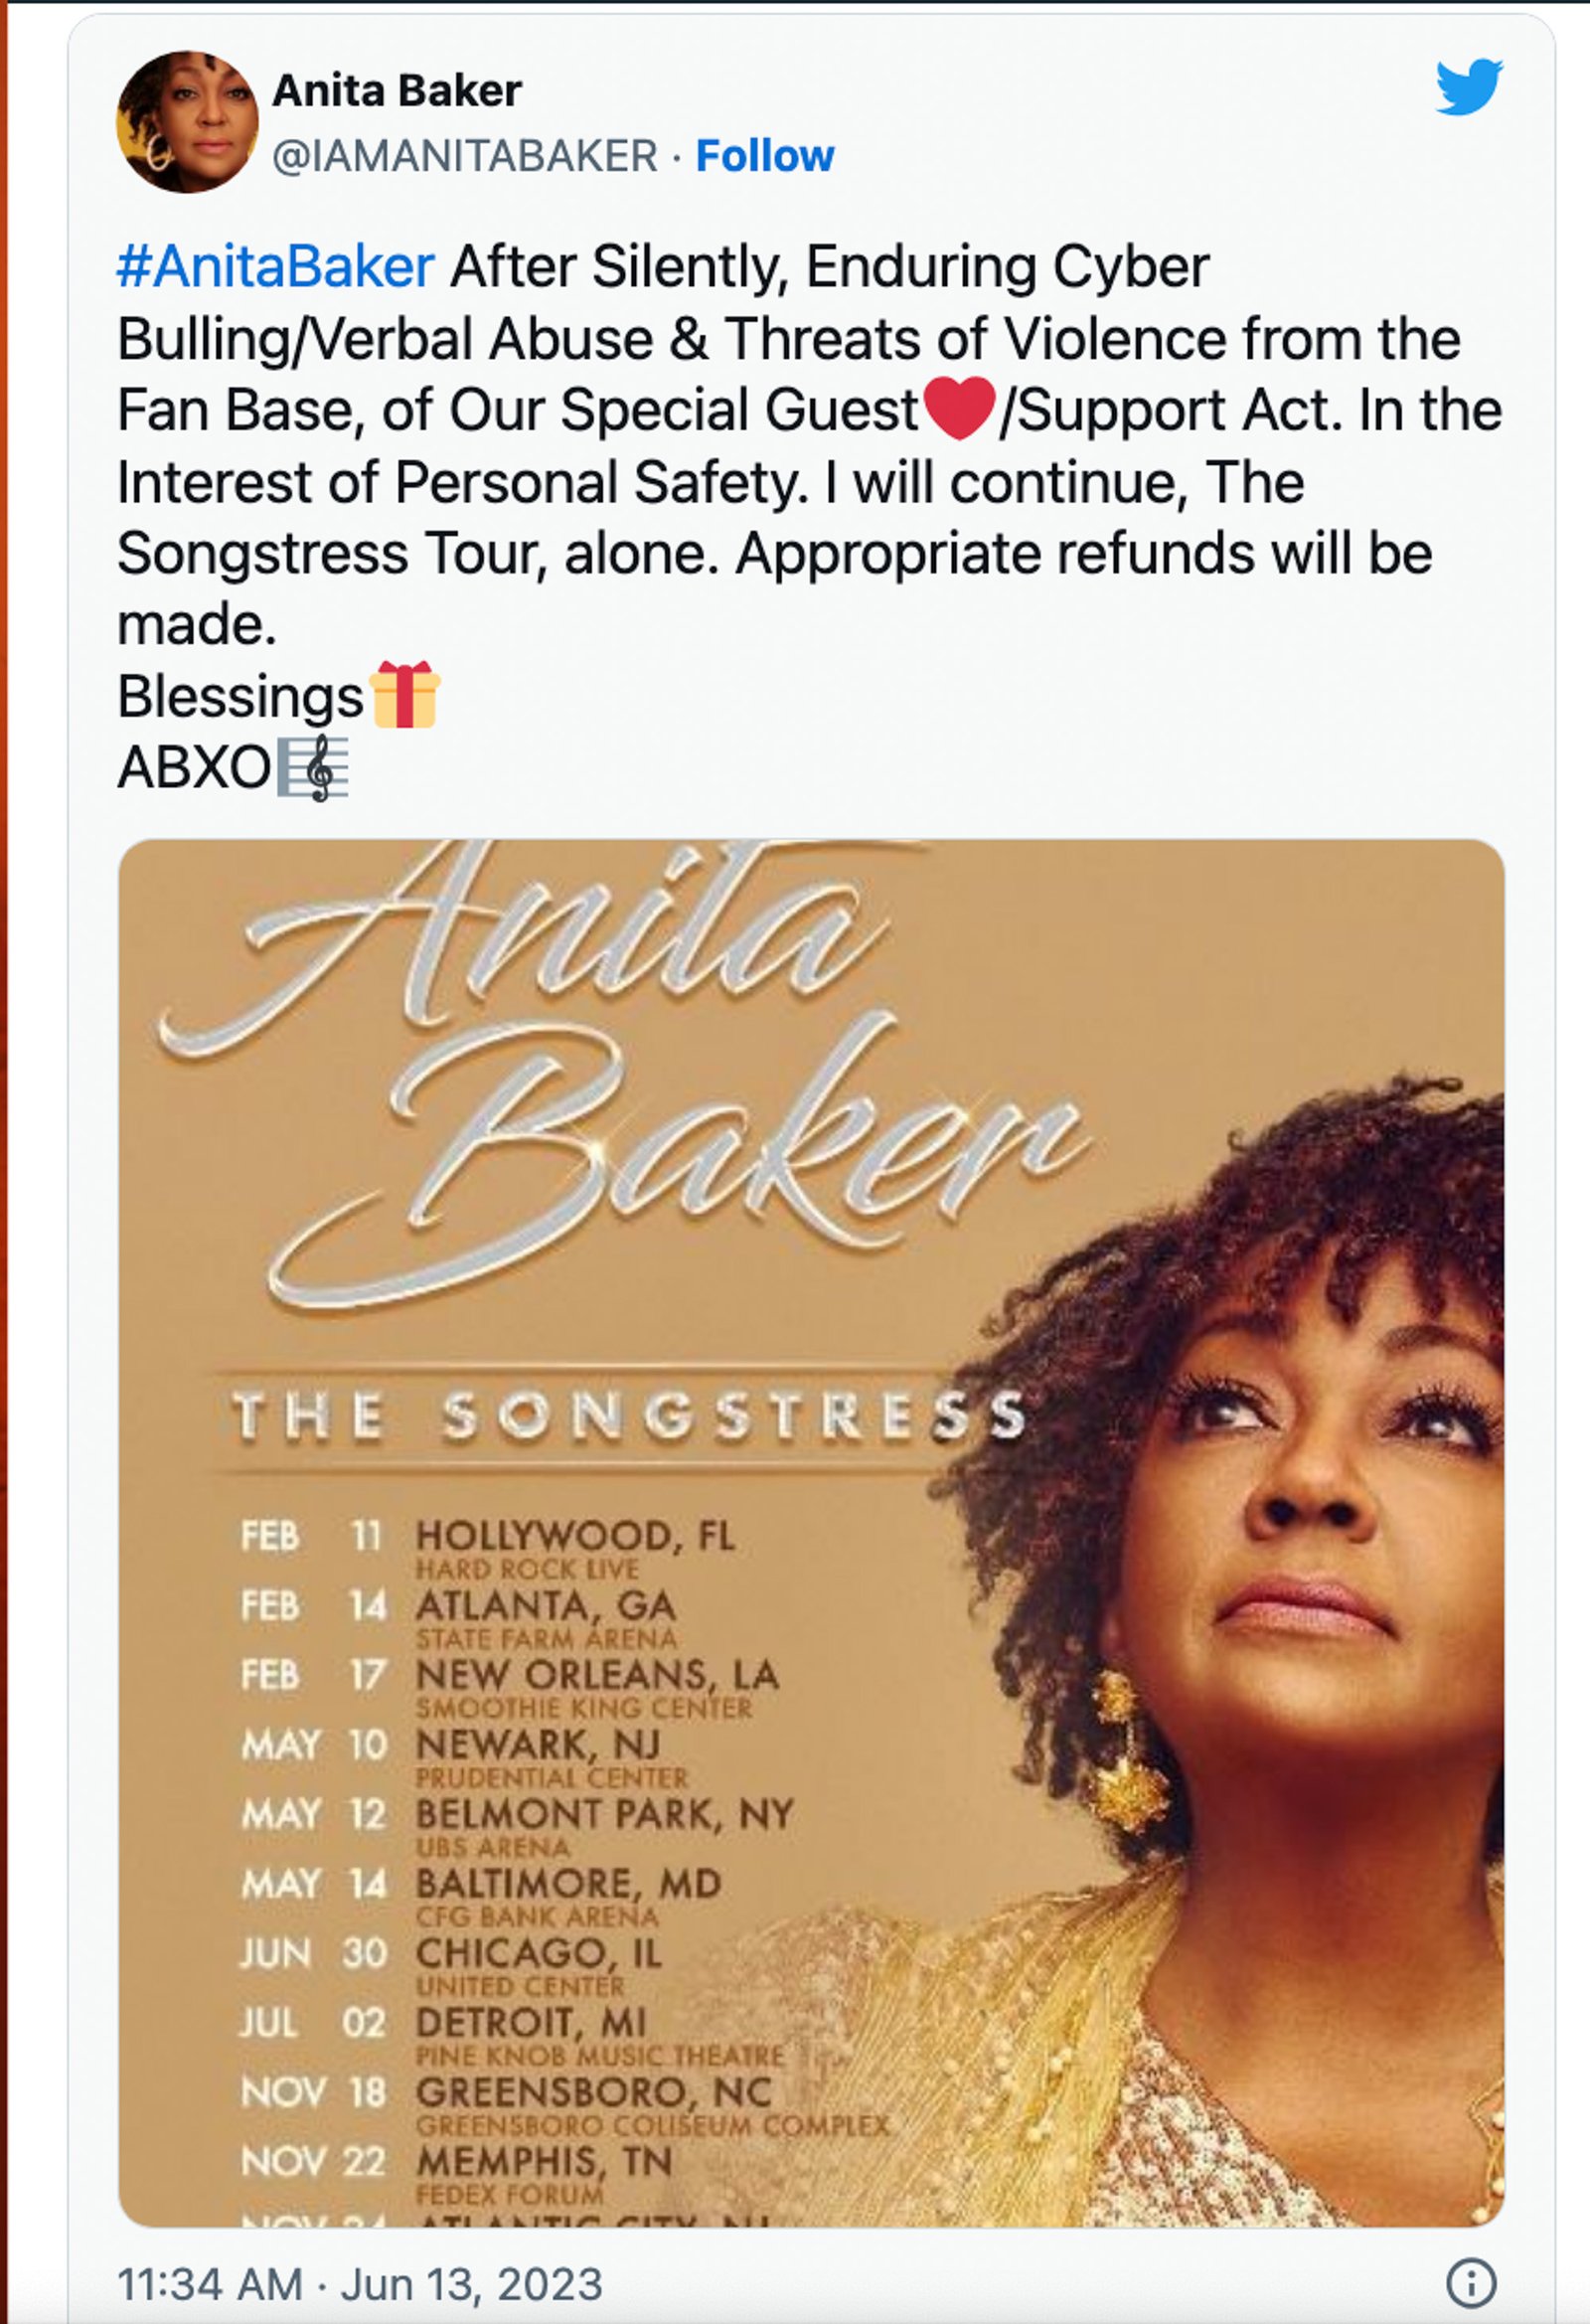 A screenshot of Anita Baker's tweet and tour dates.